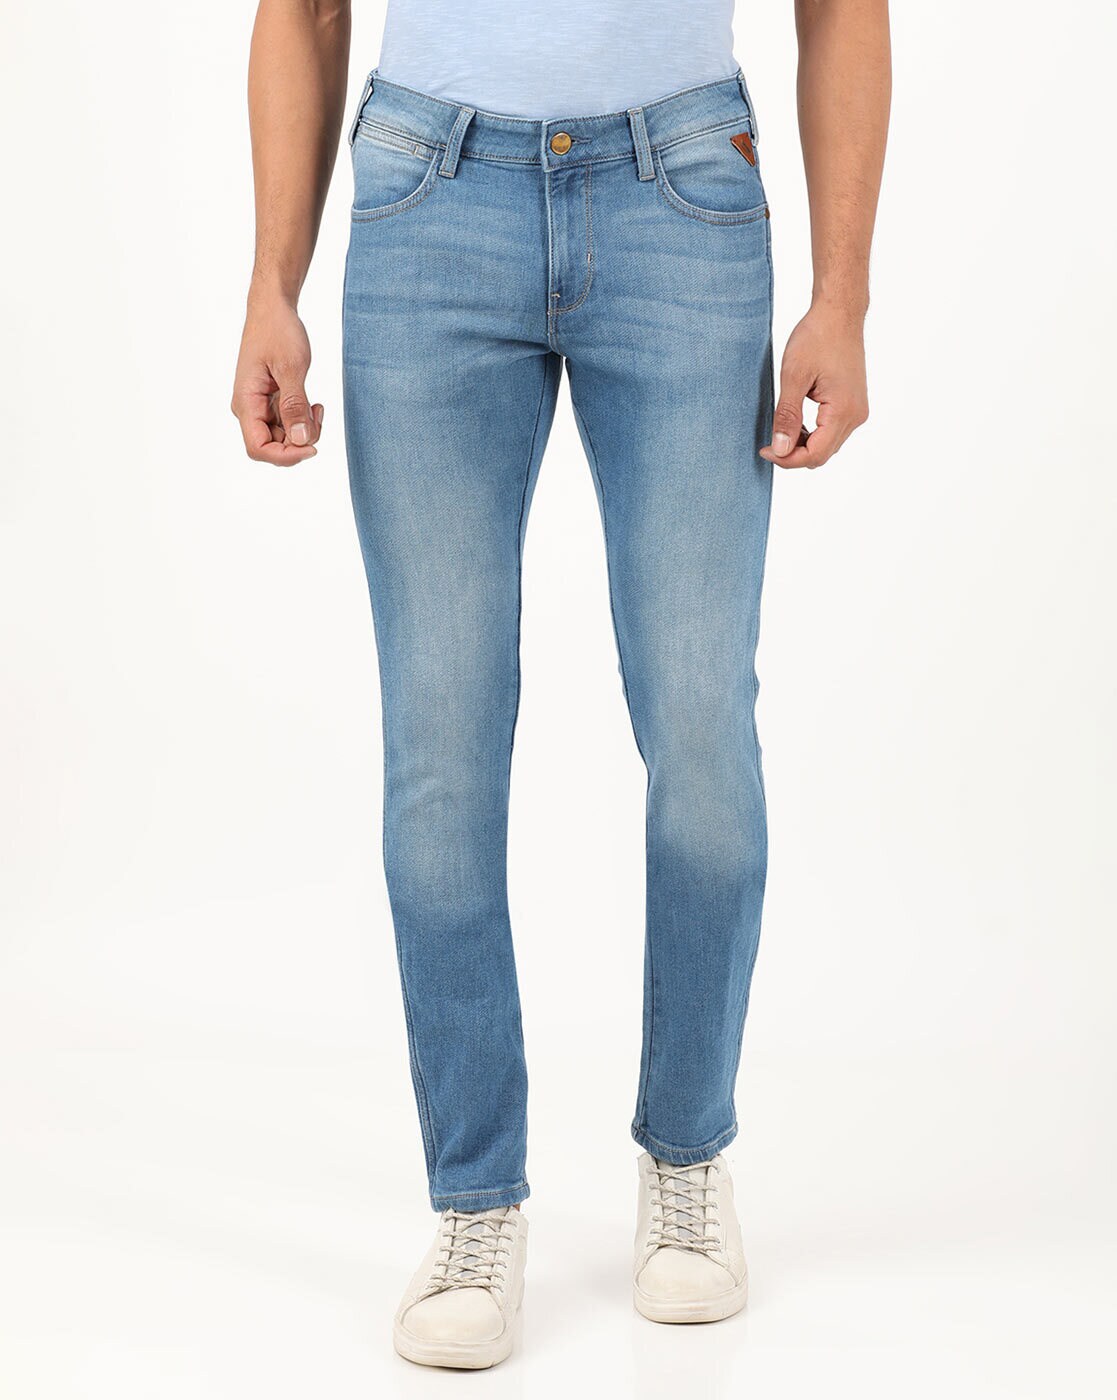 Buy Blue Jeans for Men by Wrangler Online 